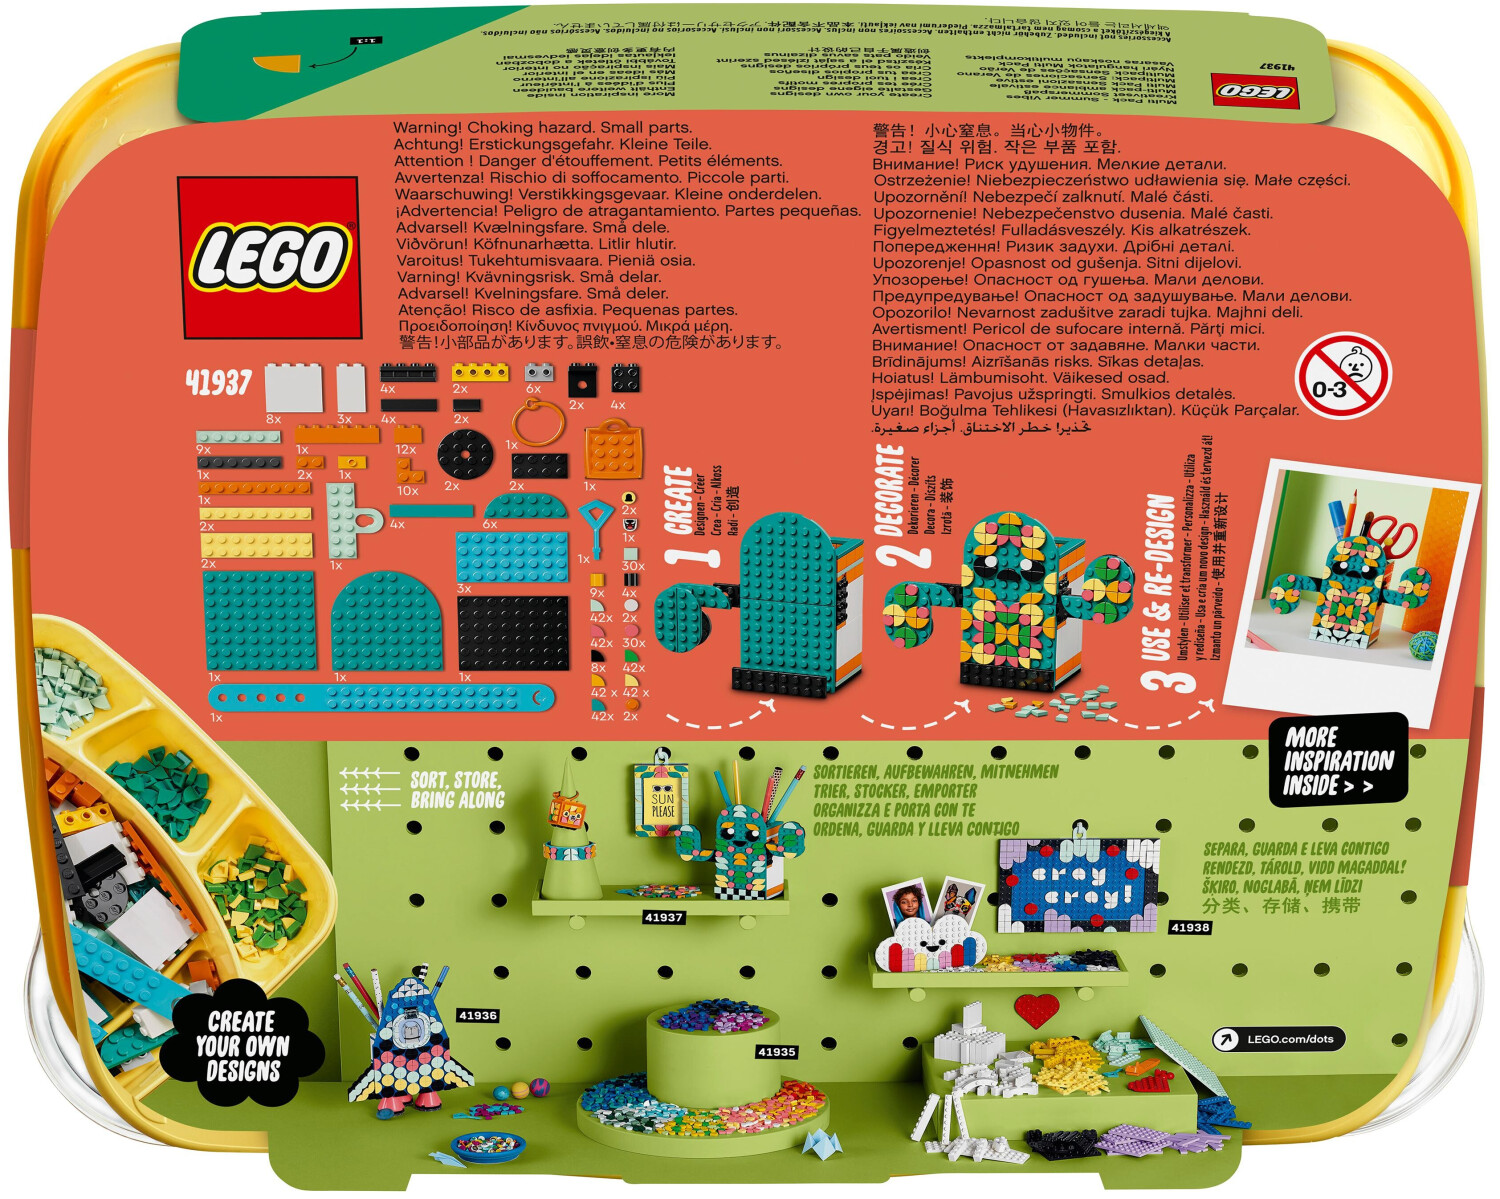 bei Dots 15,00 (41937) € LEGO ab Sommerspaß Preisvergleich Kreativset - |